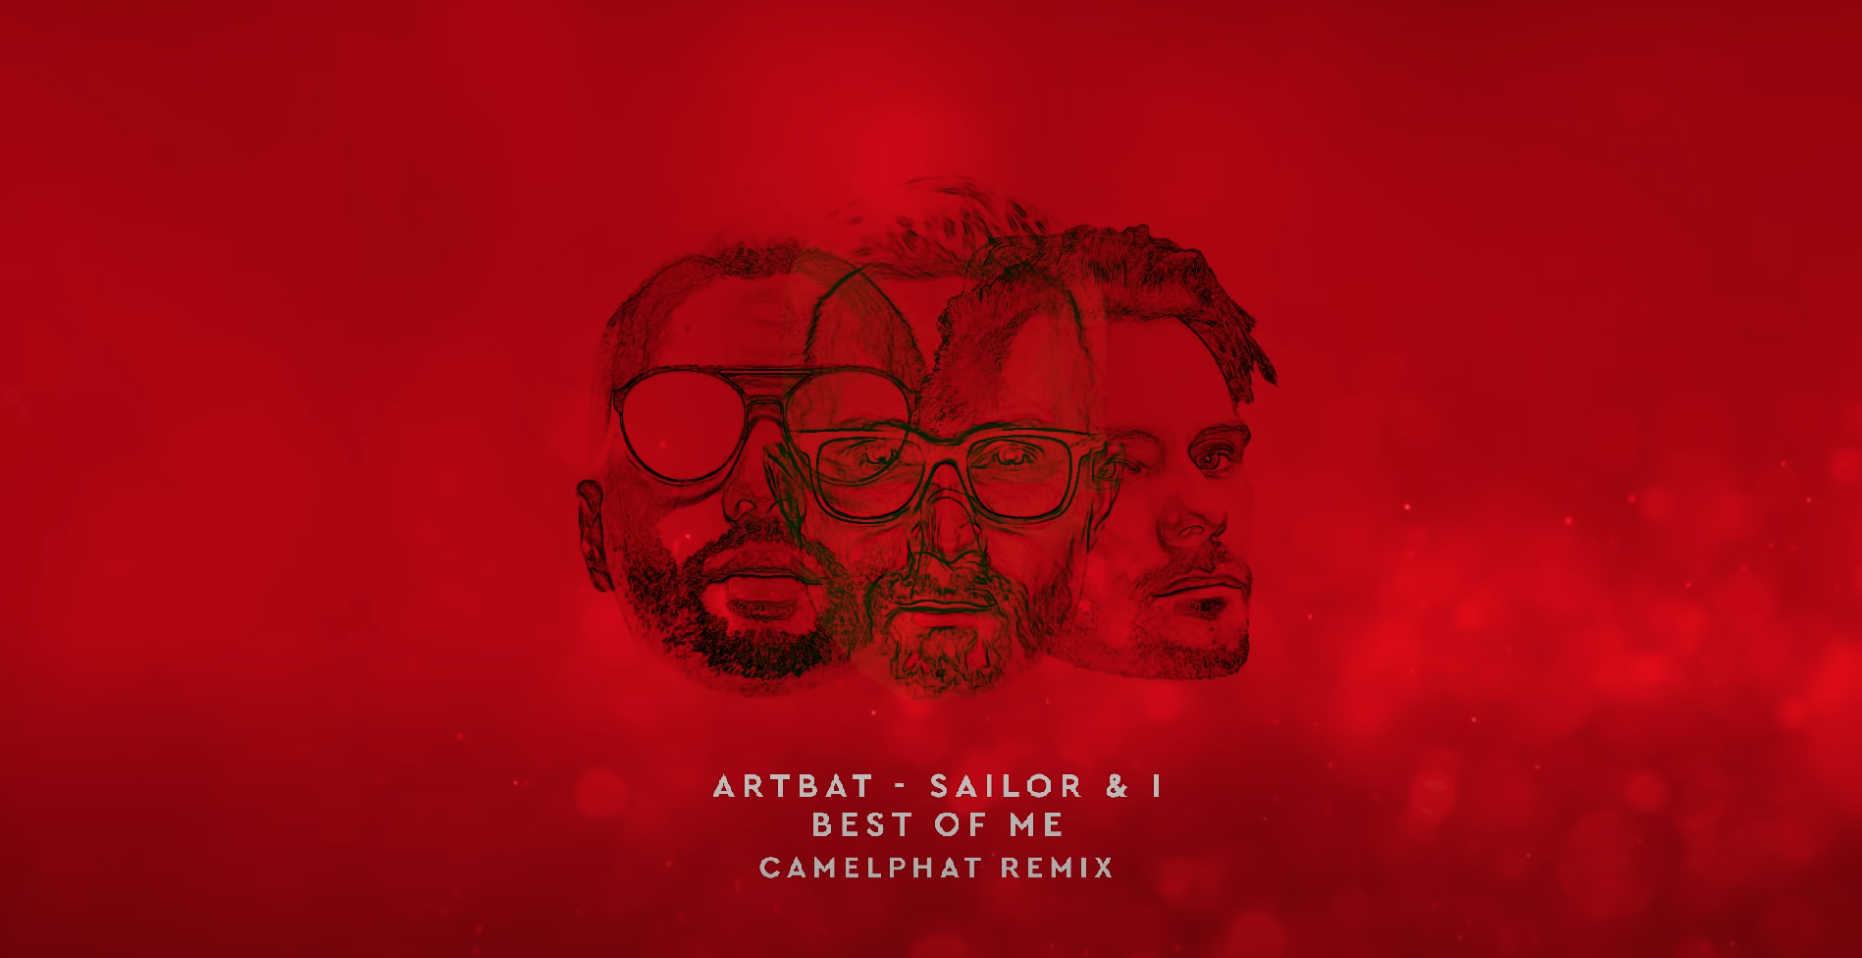 Oz artbat remix. ARTBAT;Sailor & i — best of me. CAMELPHAT, Yannis - Hypercolour (ARTBAT Remix). Best of me ARTBAT Sailor. ARTBAT группа.